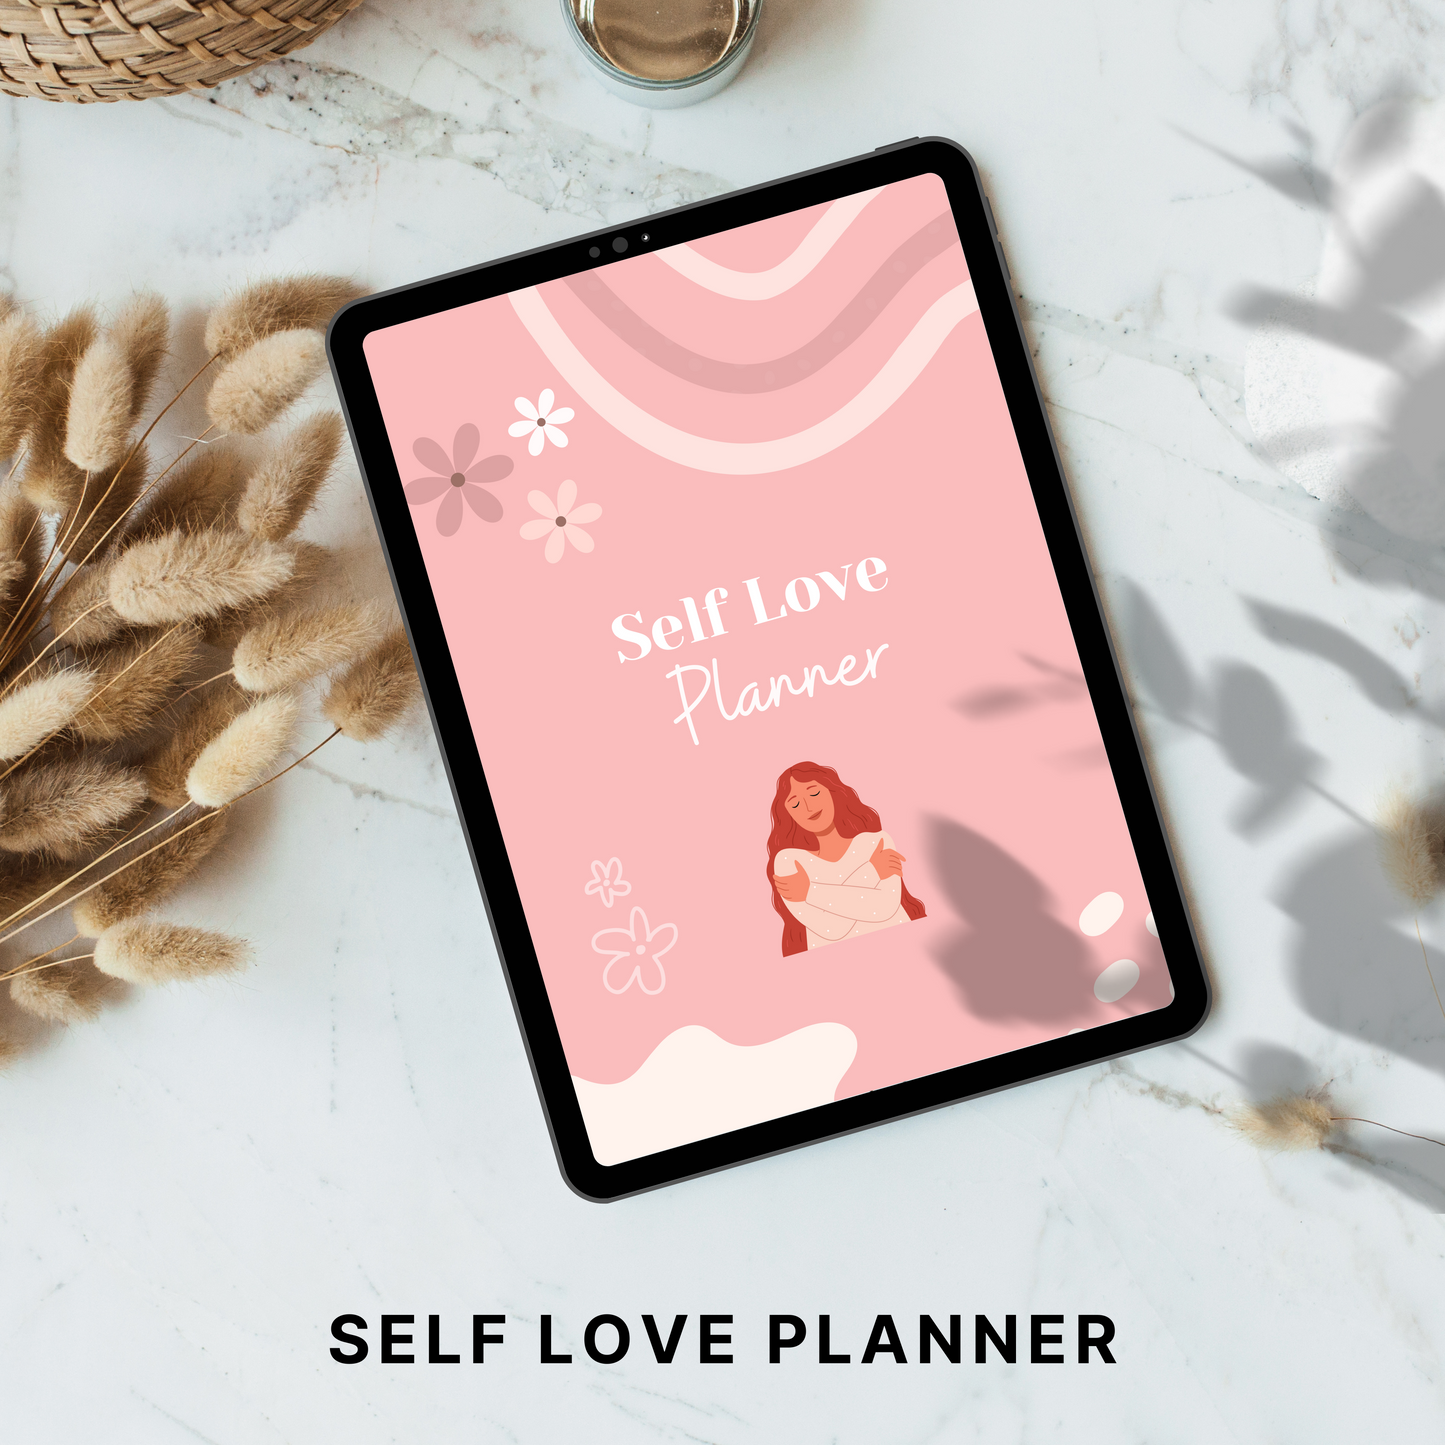 Self Love Planner PLR/MRR